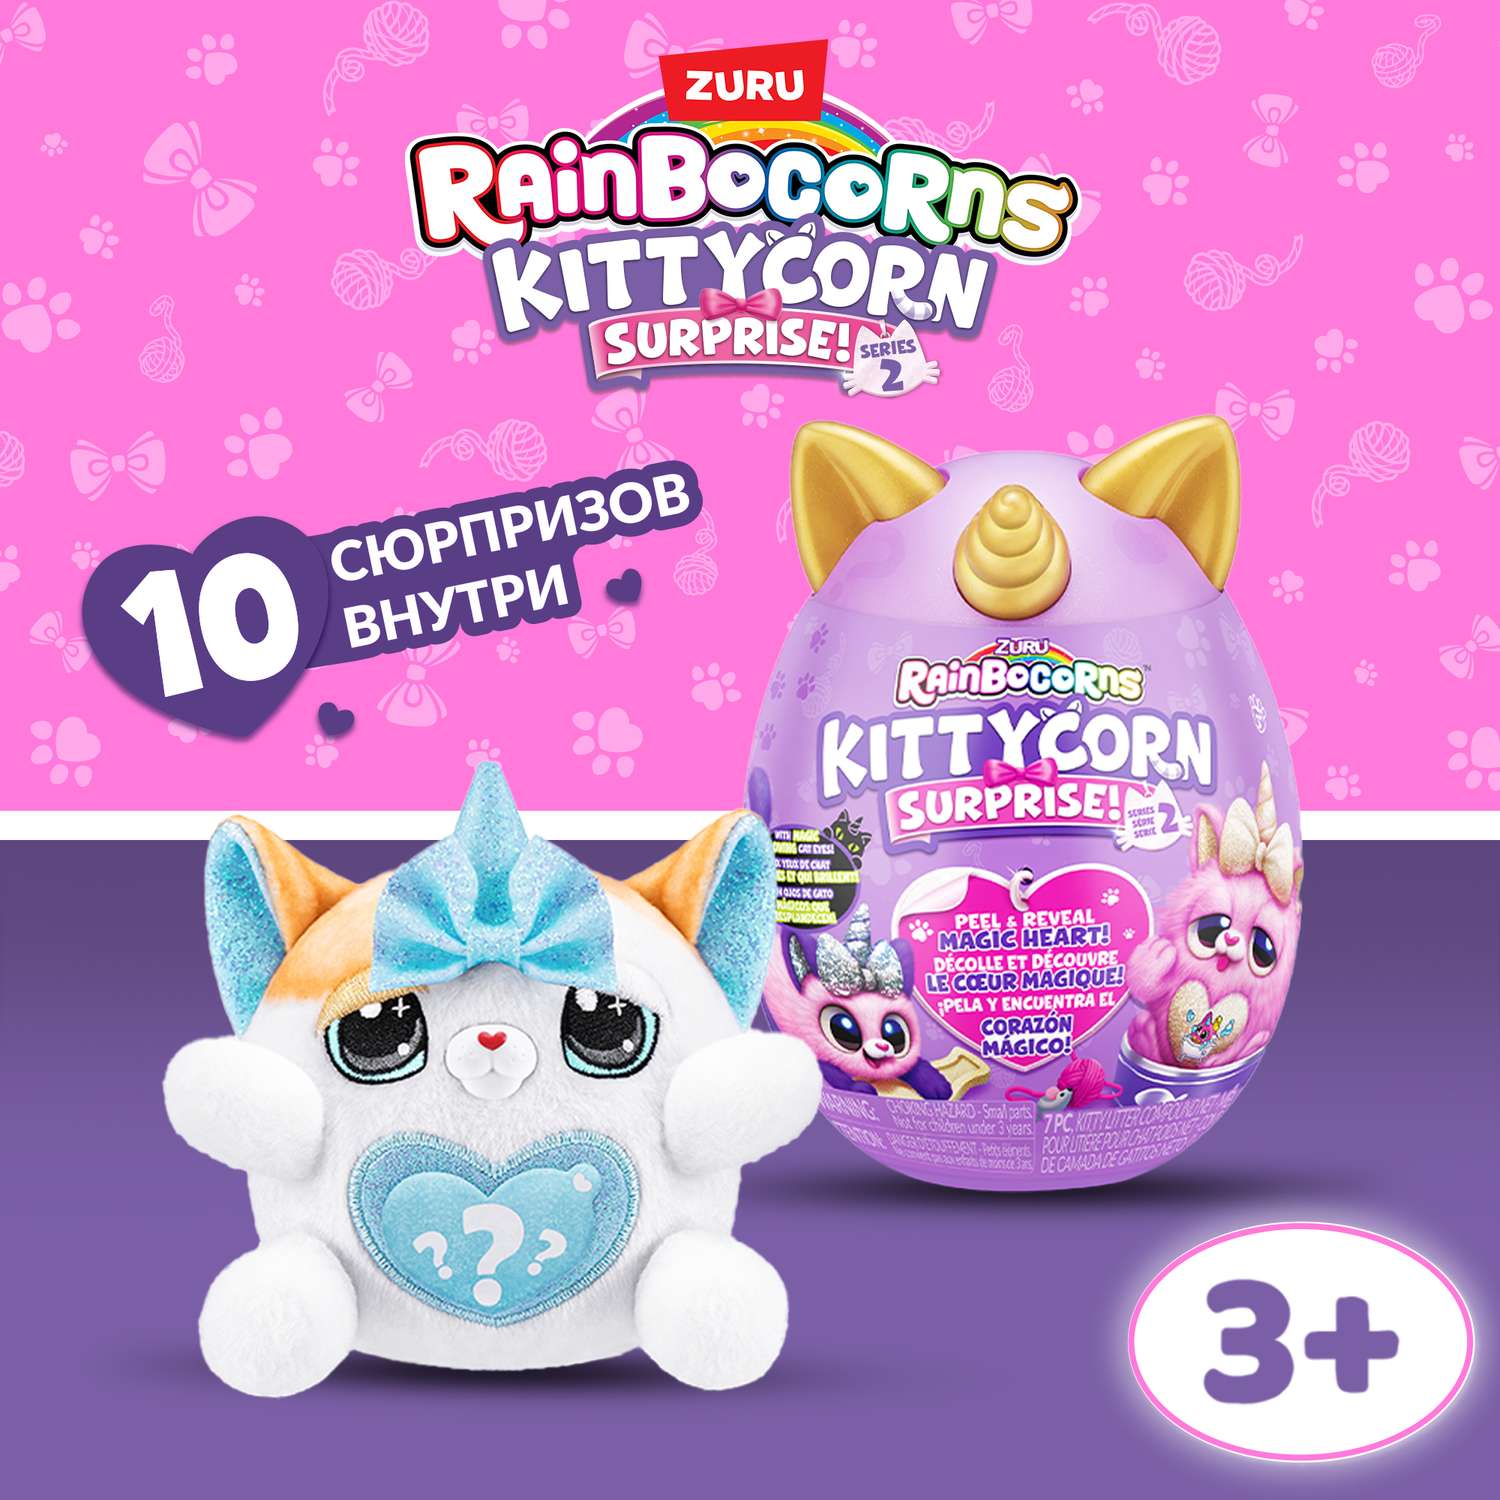 Игрушка Rainbocorns Kittycorn Яйцо в непрозрачной упаковке (Сюрприз) 9279 - фото 1